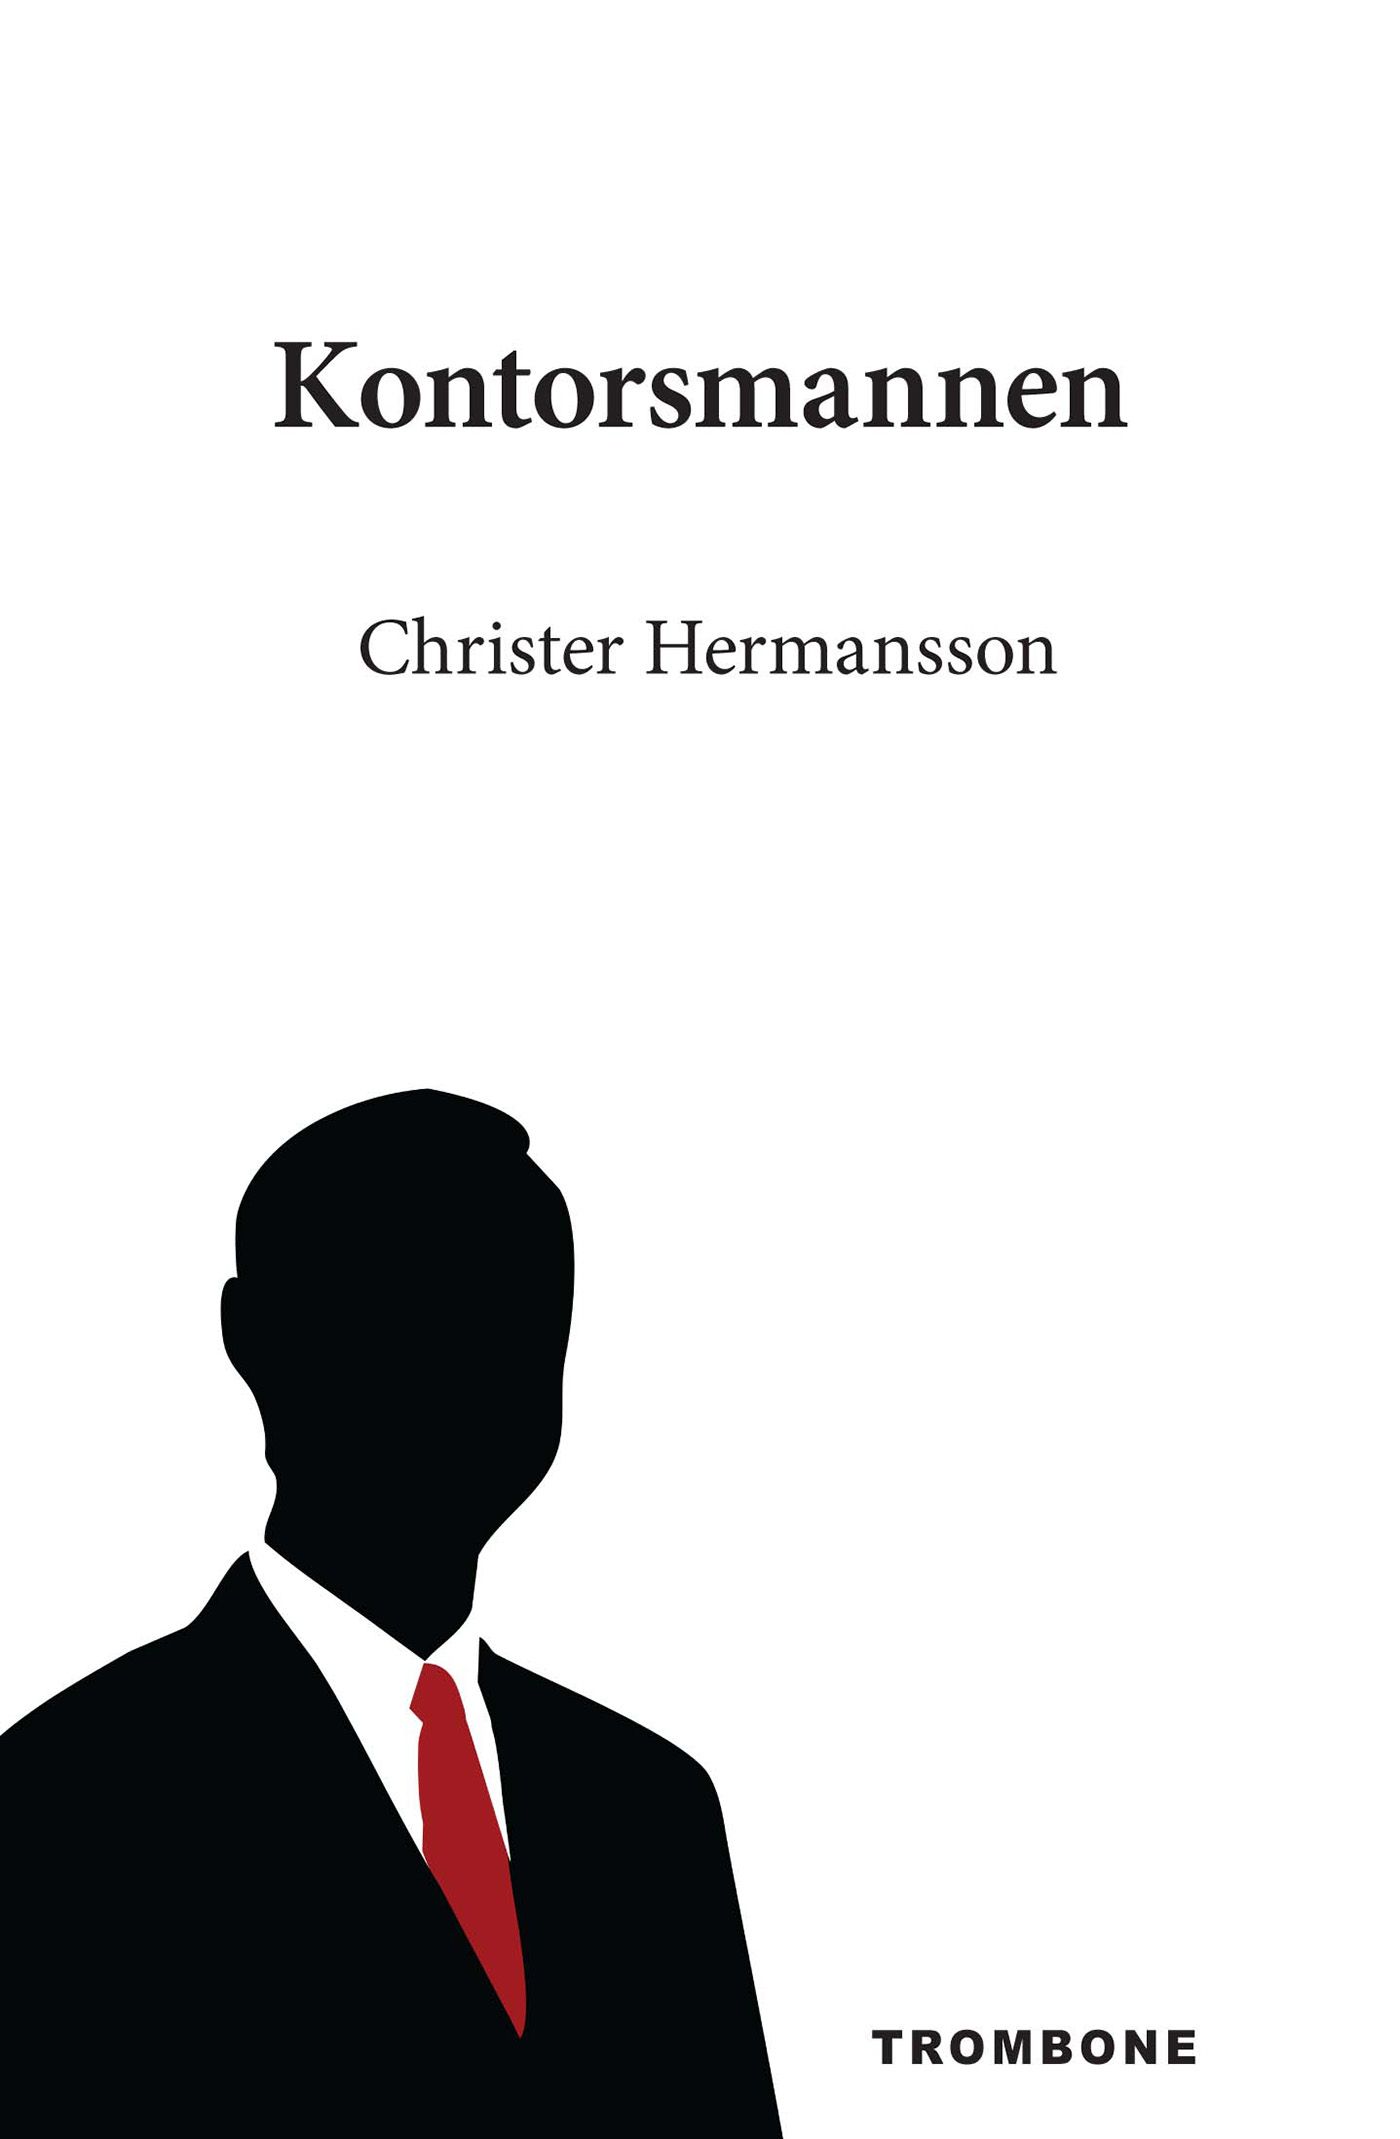 Kontorsmannen, eBook by Christer Hermansson